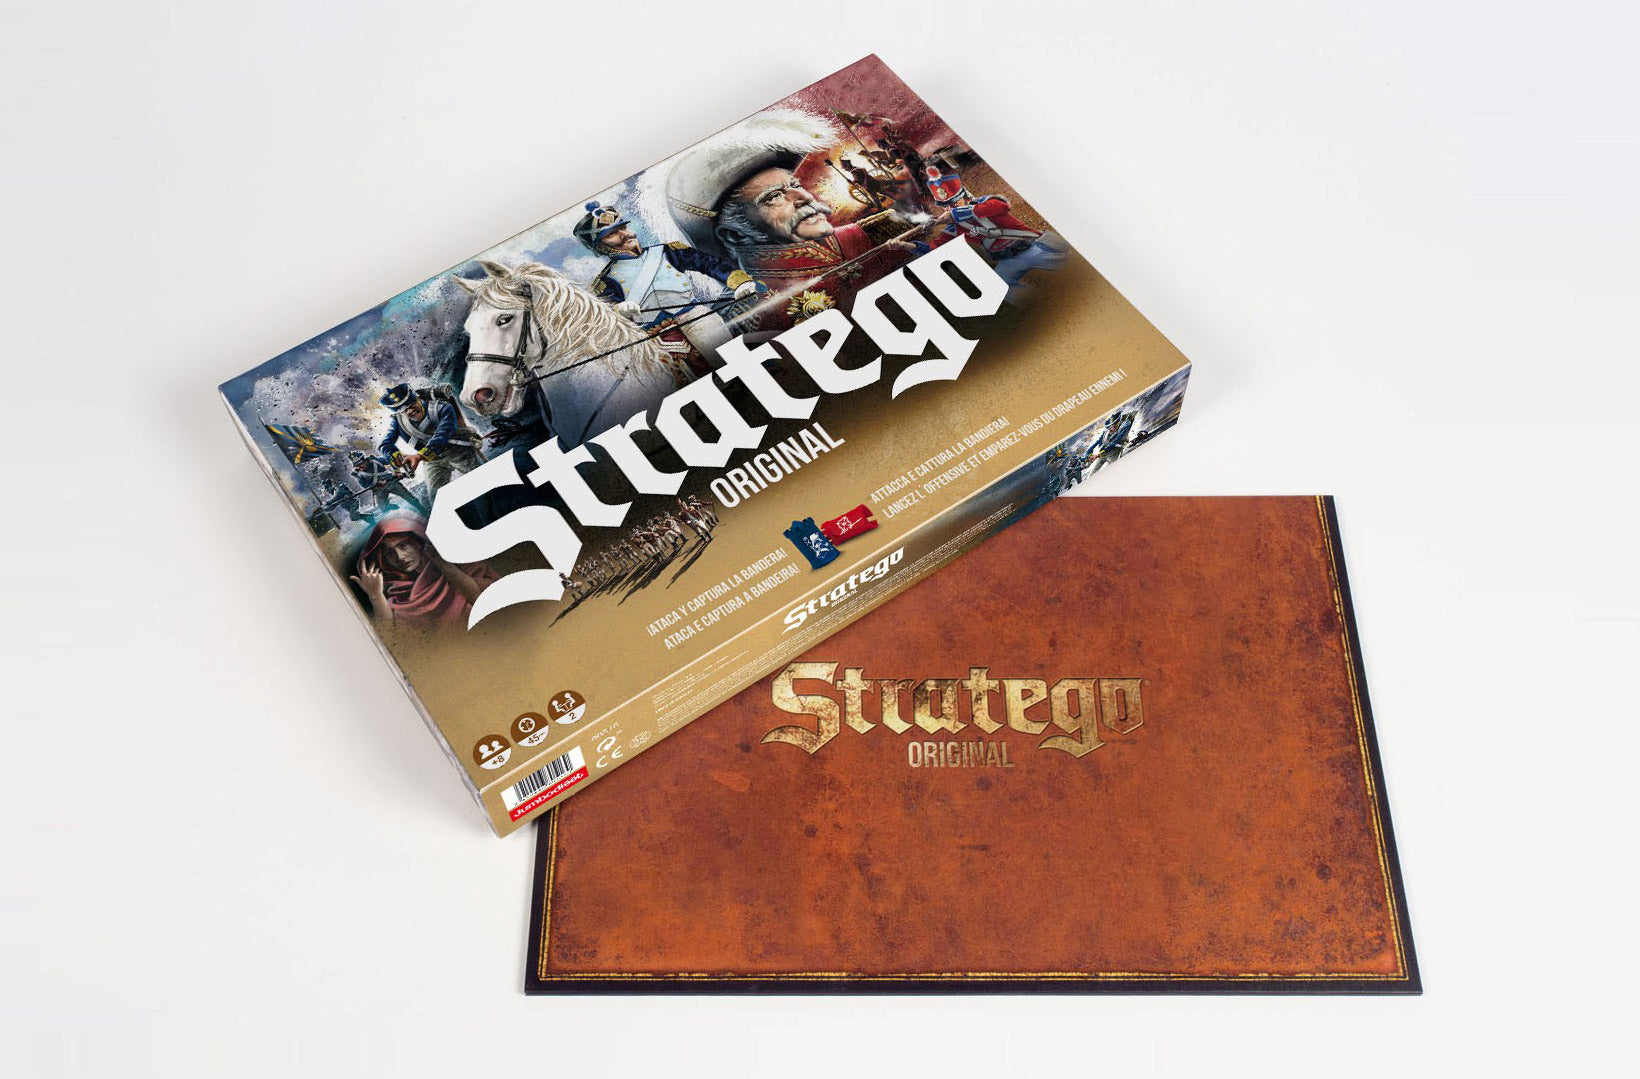 Stratego - Original Edition (40vs40)